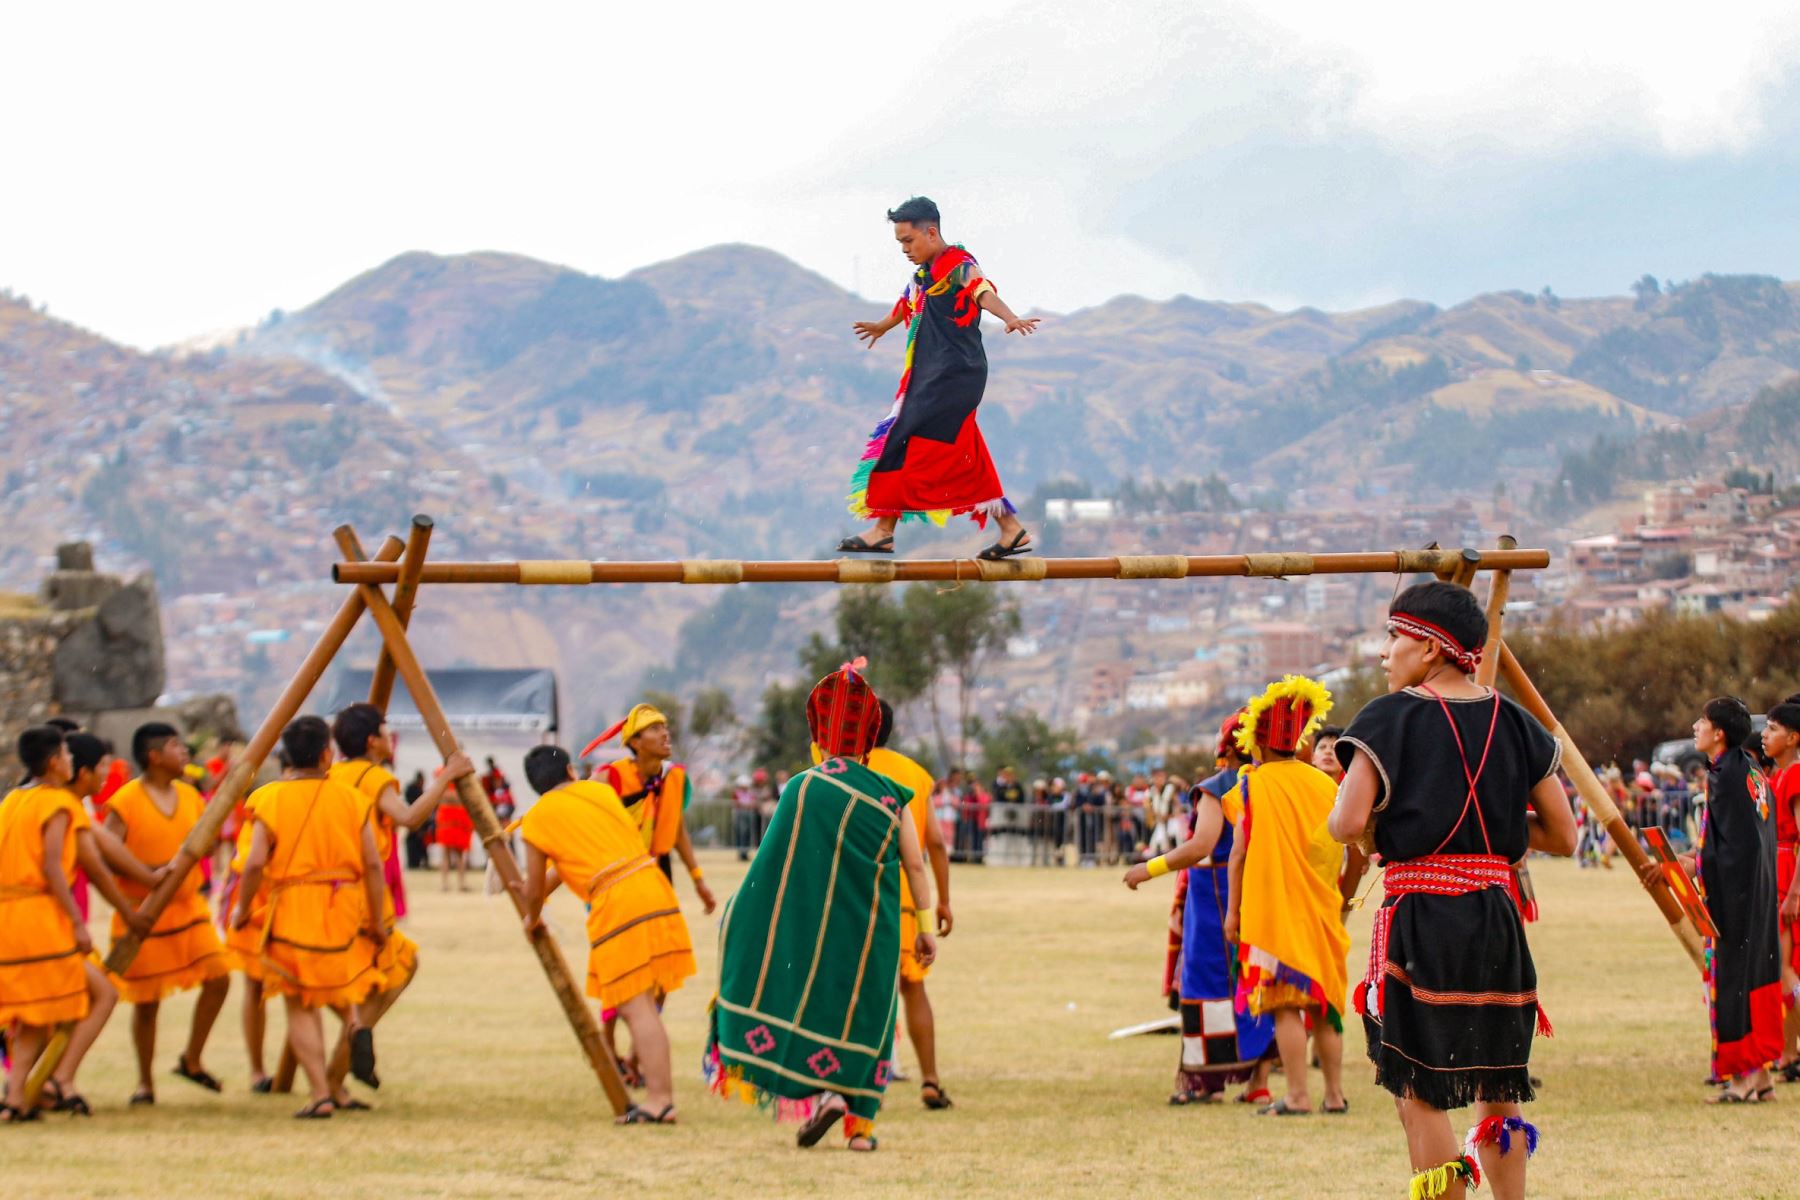 La explanada del parque arqueológico de Sacsayhuaman, ubicada en la parte superior de la ciudad del Cusco, a unos quince minutos en auto, fue espacio ideal para la revaloración del Warachikuy, ritual inca, que espera convertirse en el segundo más importante después del Inti Raymi.
Foto: Alejandro Delgado T.